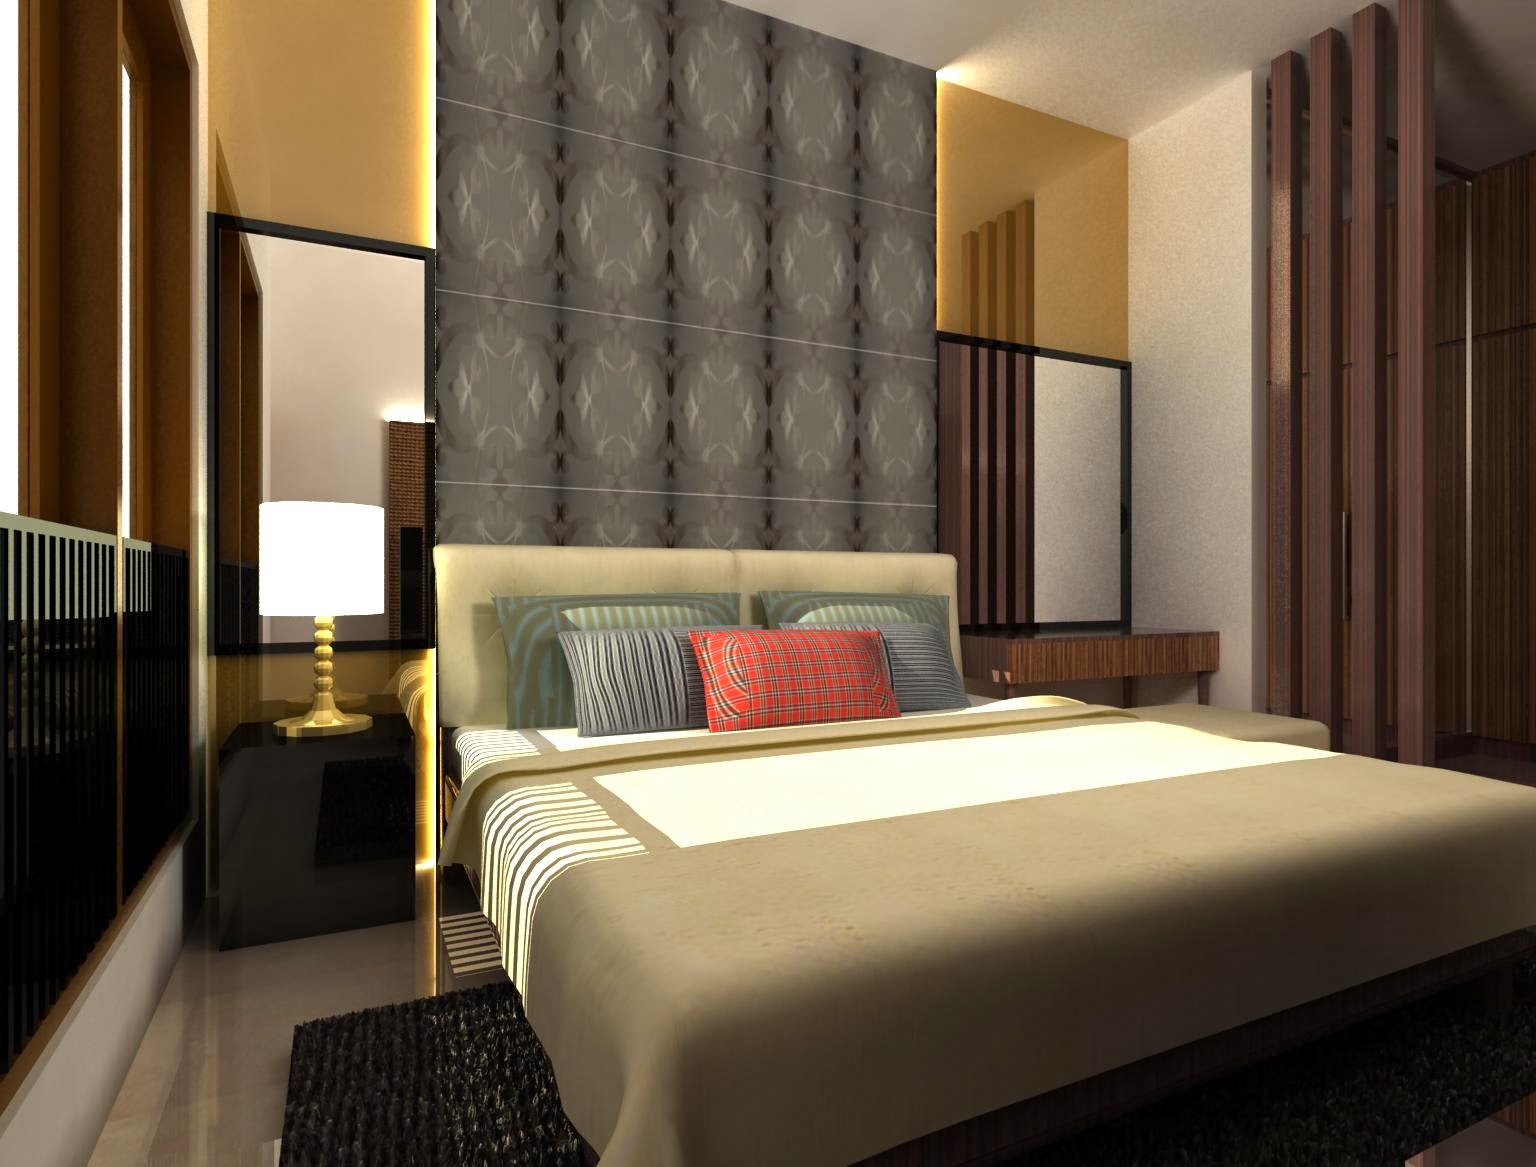 Contoh Desain Kamar Tidur Minimalis Terbaru 2014